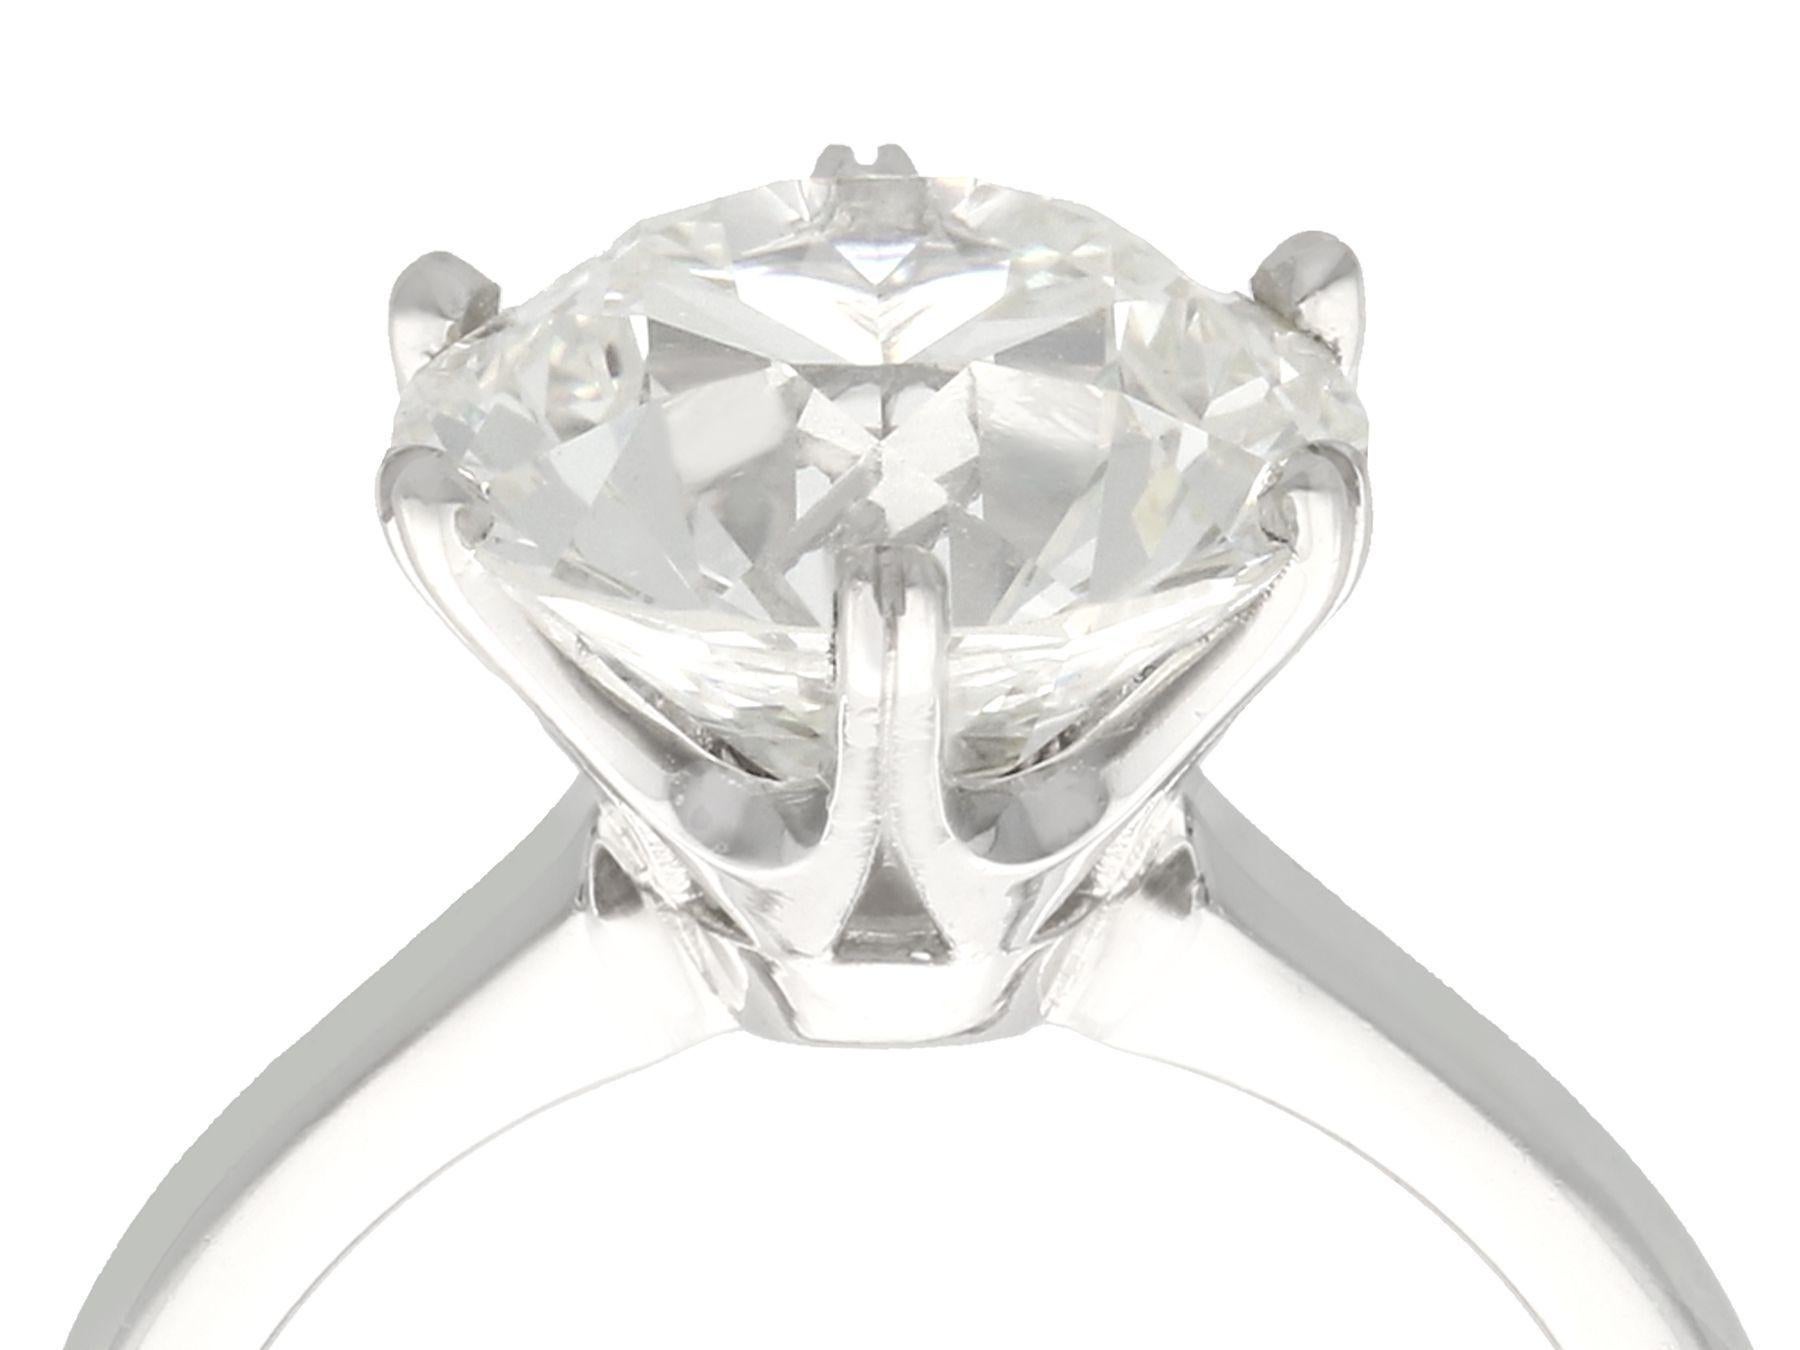 Une exceptionnelle et impressionnante bague solitaire en diamant ancien de 4,89 carats, présentée dans une monture en platine contemporaine ; elle fait partie de nos diverses collections de bijoux en diamant.

Une exceptionnelle et impressionnante